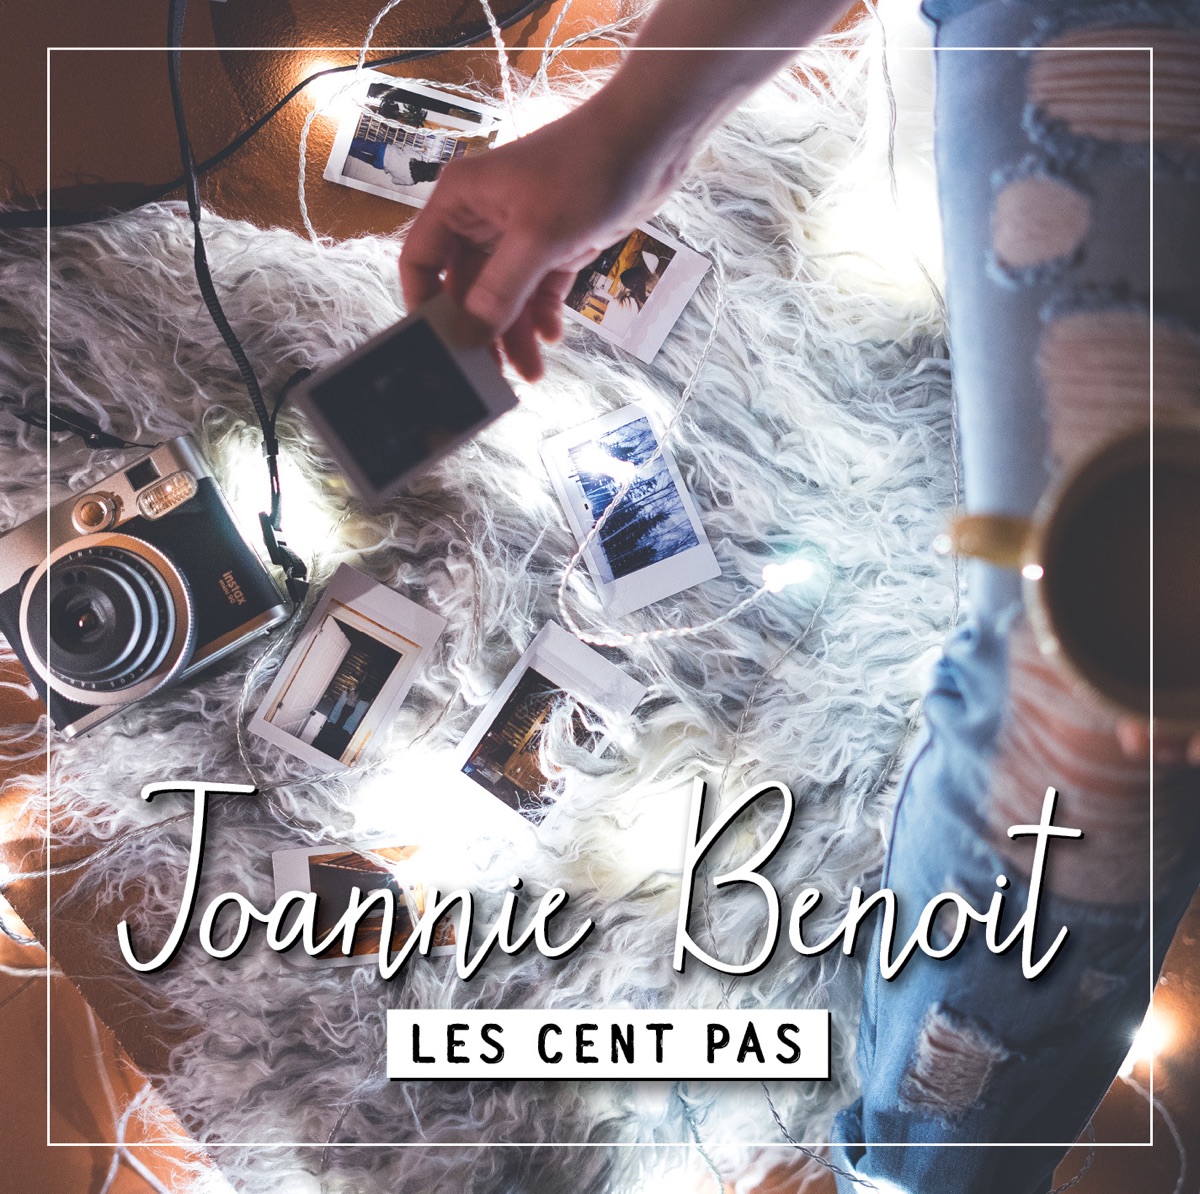 Feux de bengale - Album by Joannie Benoit - Apple Music